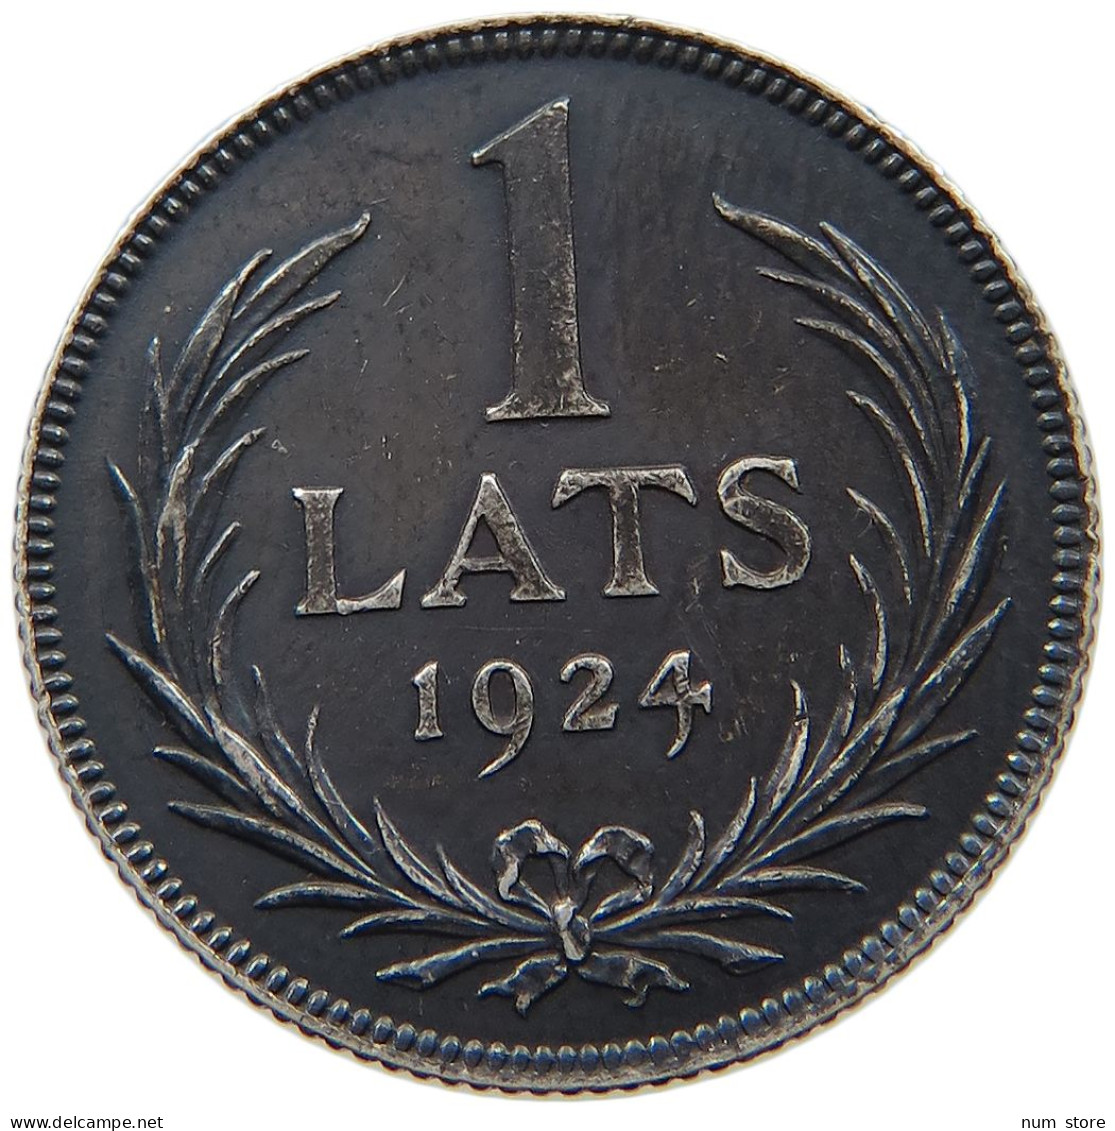 LATVIA LATS 1924  #s035 0267 - Letland